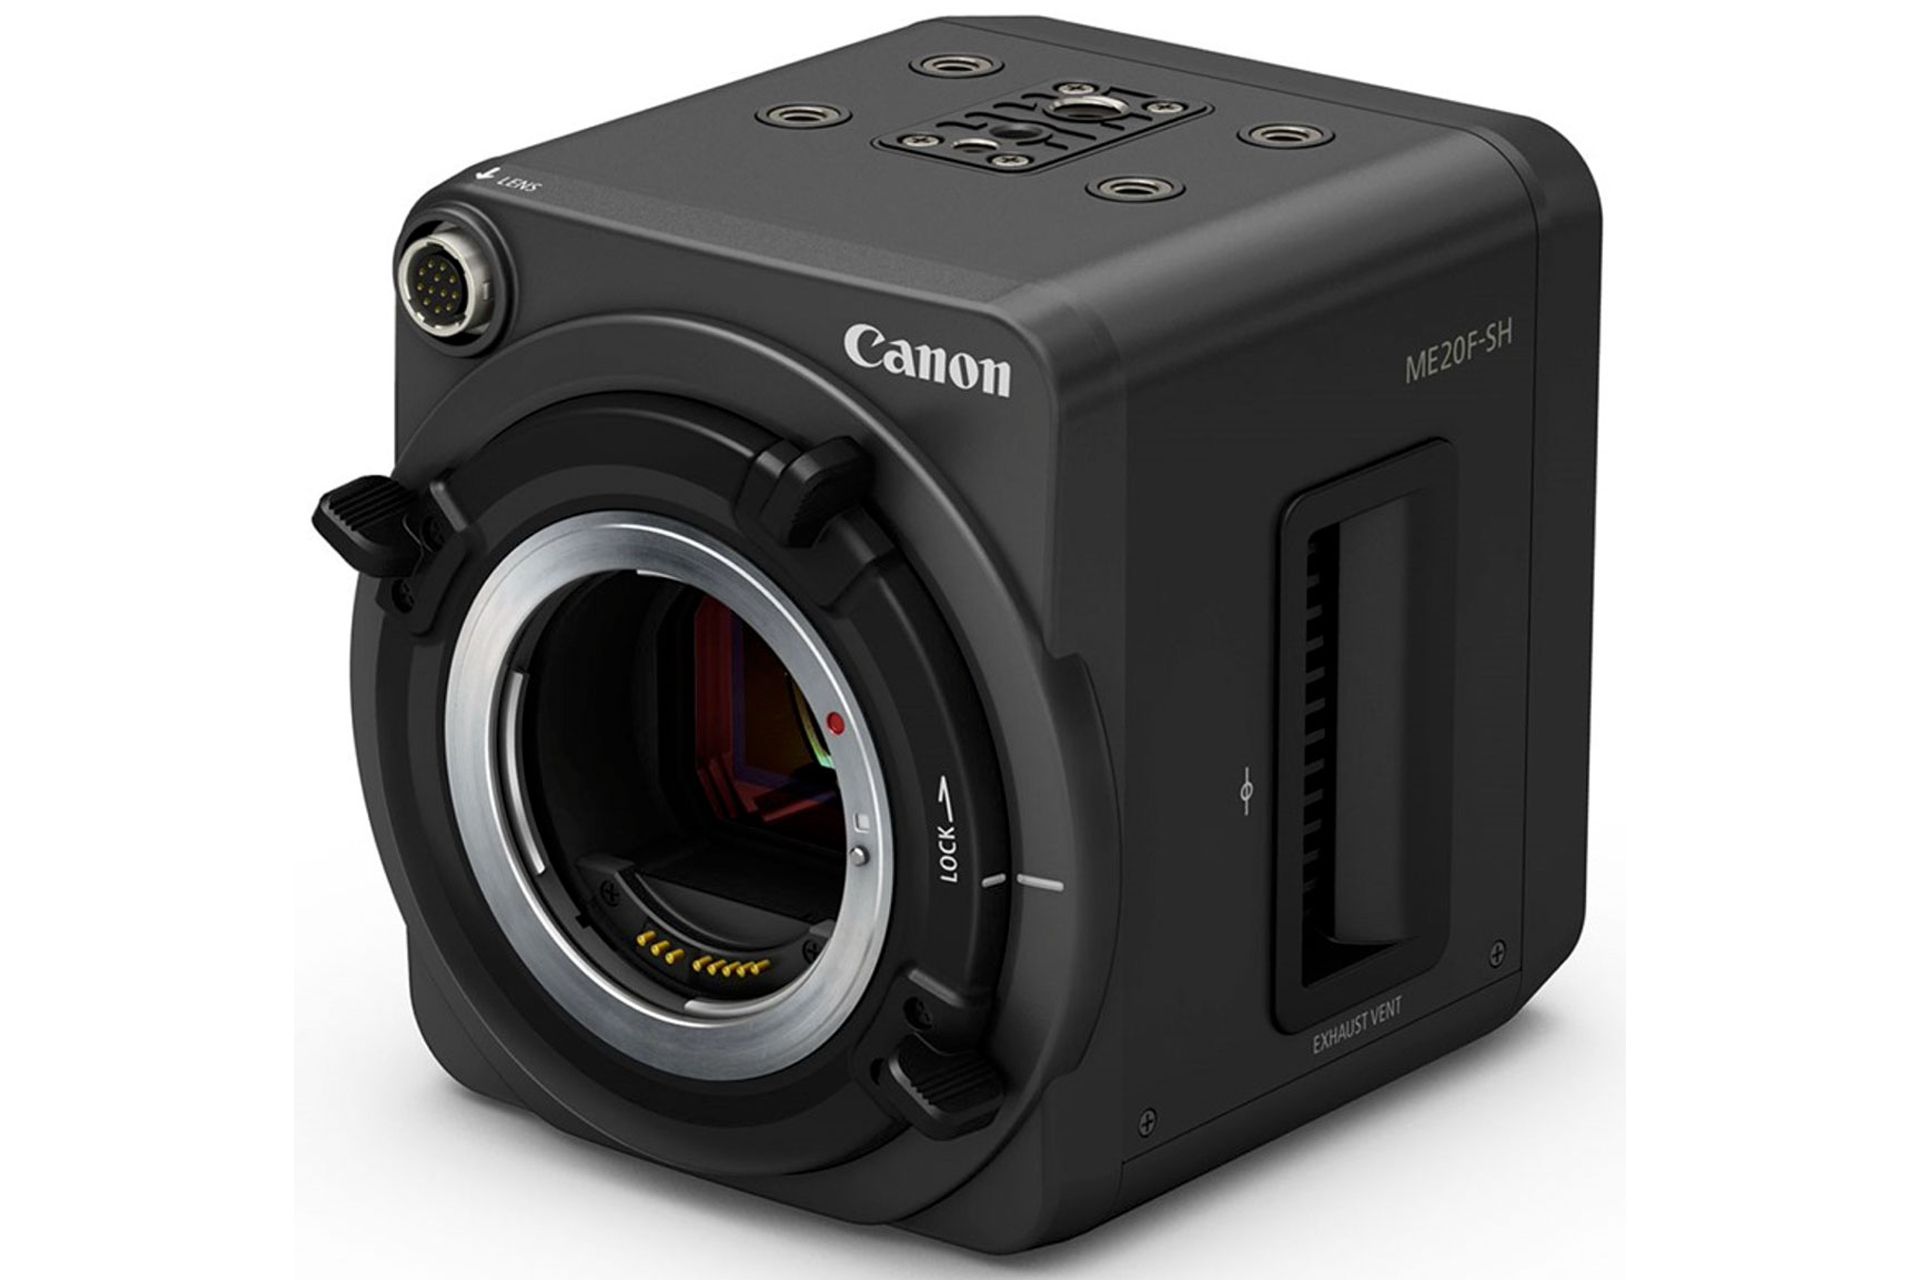 مرجع متخصصين ايران دوربين كانن Canon ME20F-SH از نماي سه رخ جلو